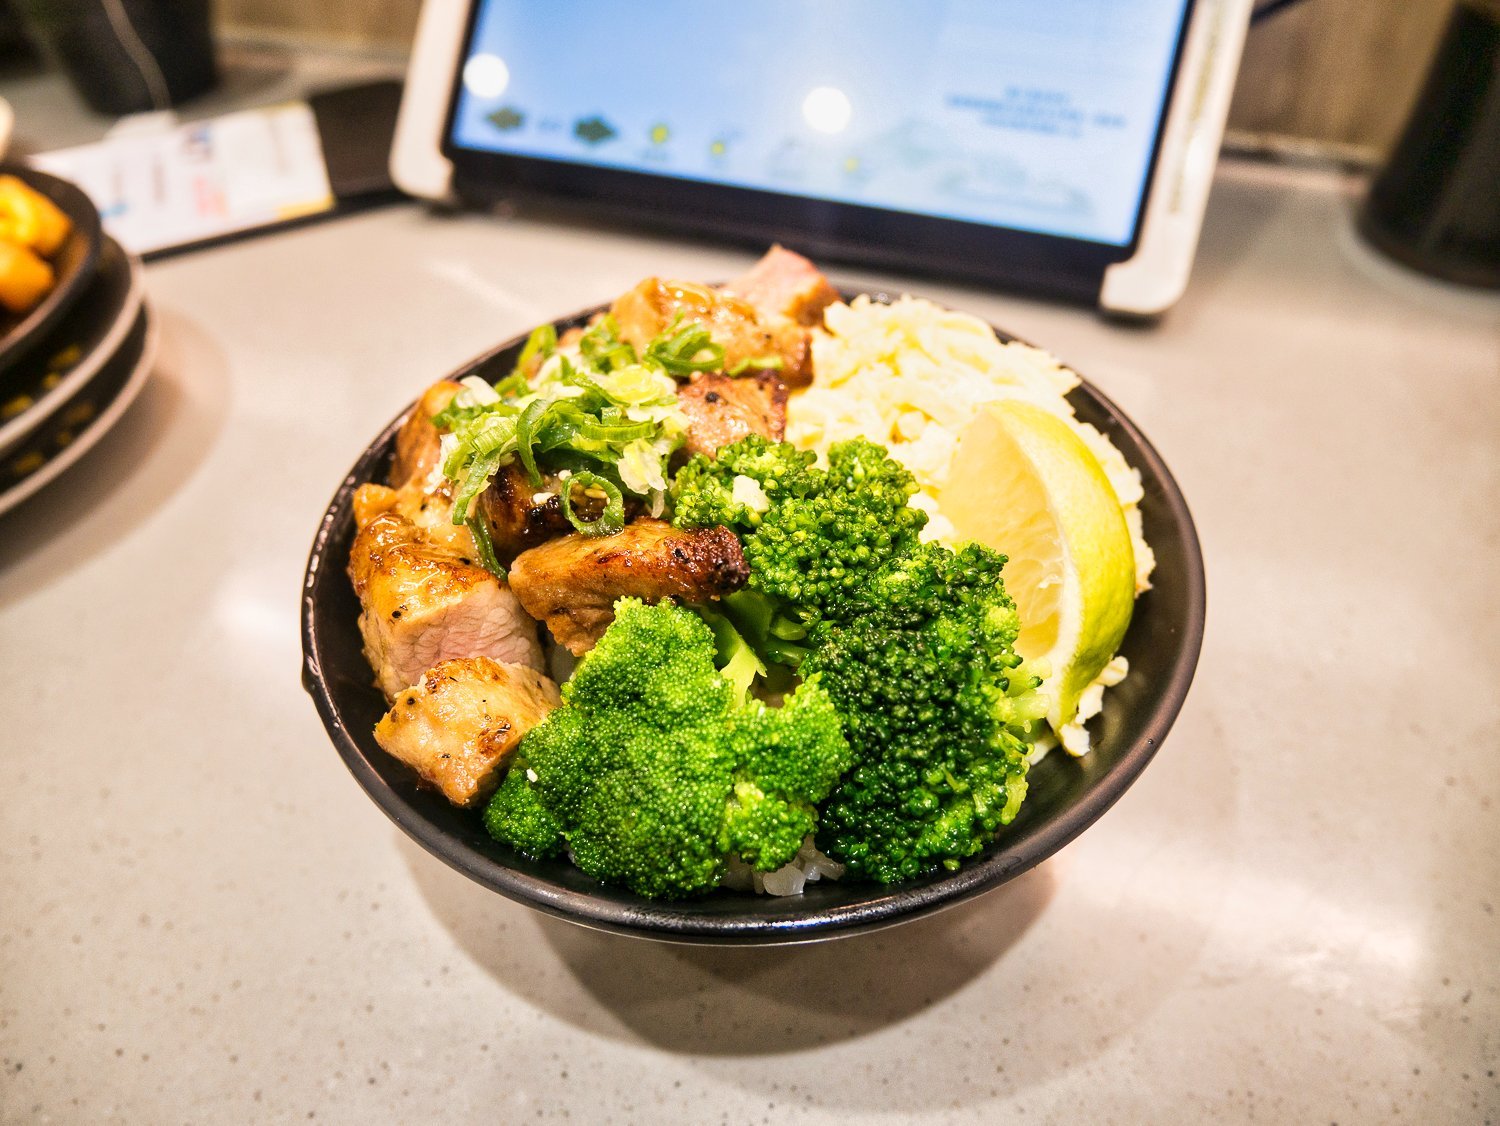 一条通 用平板點餐、新幹線送餐 新鮮壽司美味食材 永和區美食